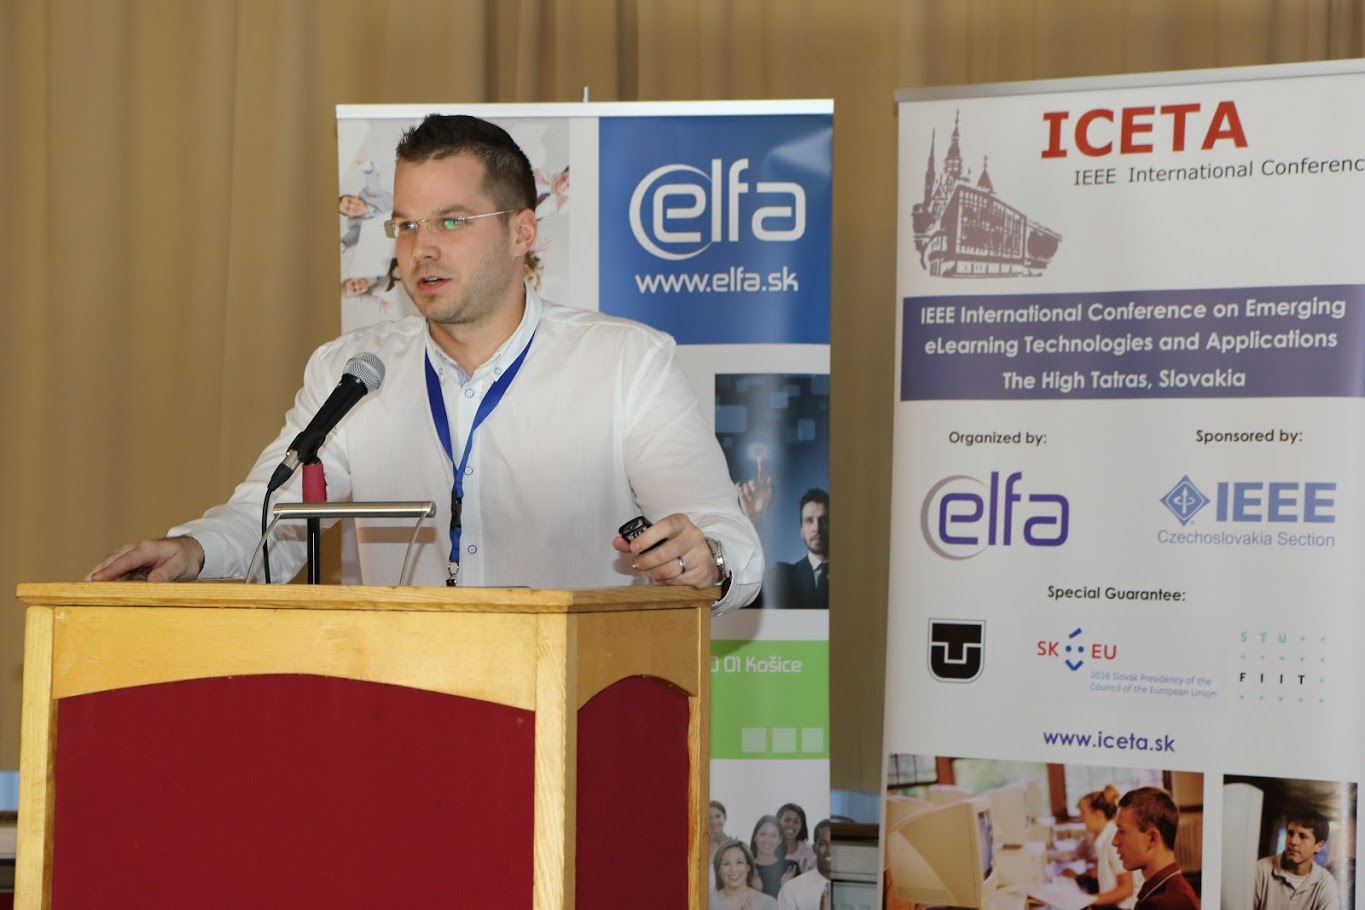 Medzinárodná konferencia o eLearningových technológiách a ich aplikáciách (ICETA 2017)